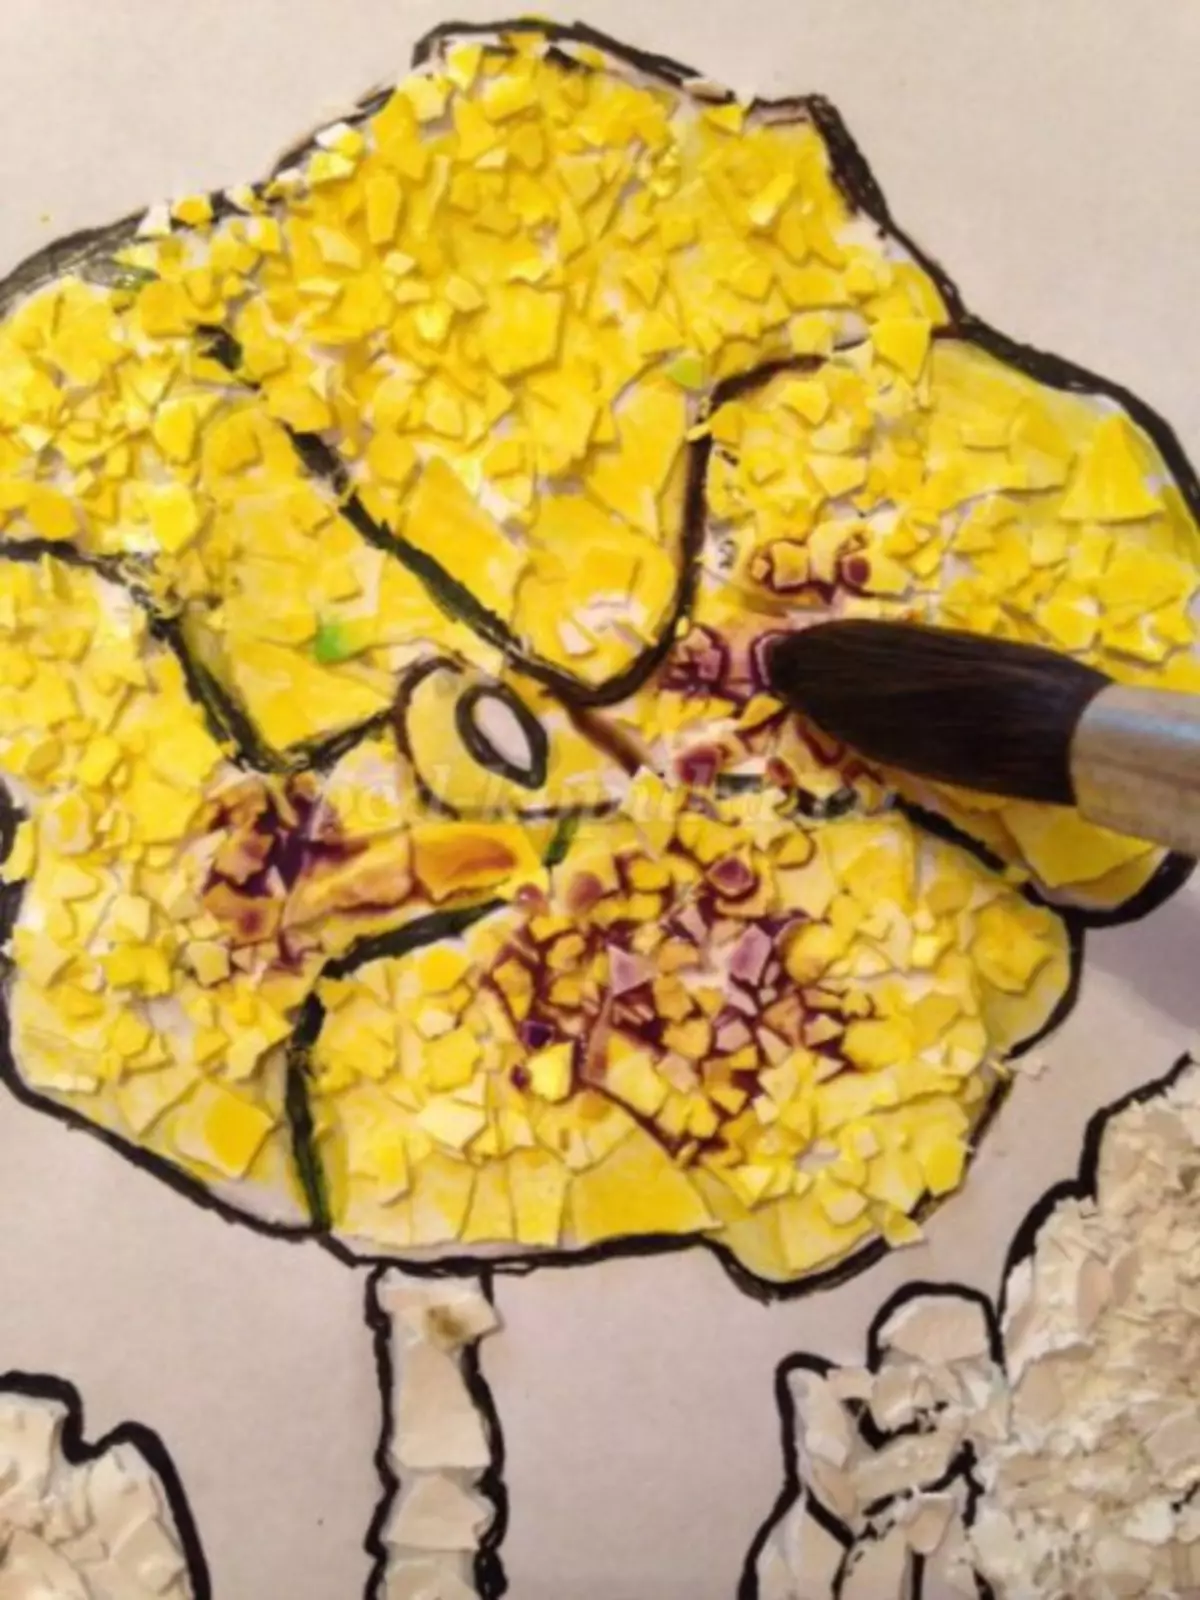 Mosaic tina cangkang endog anu anjeun damel: master kelas sareng poto sareng pidéo